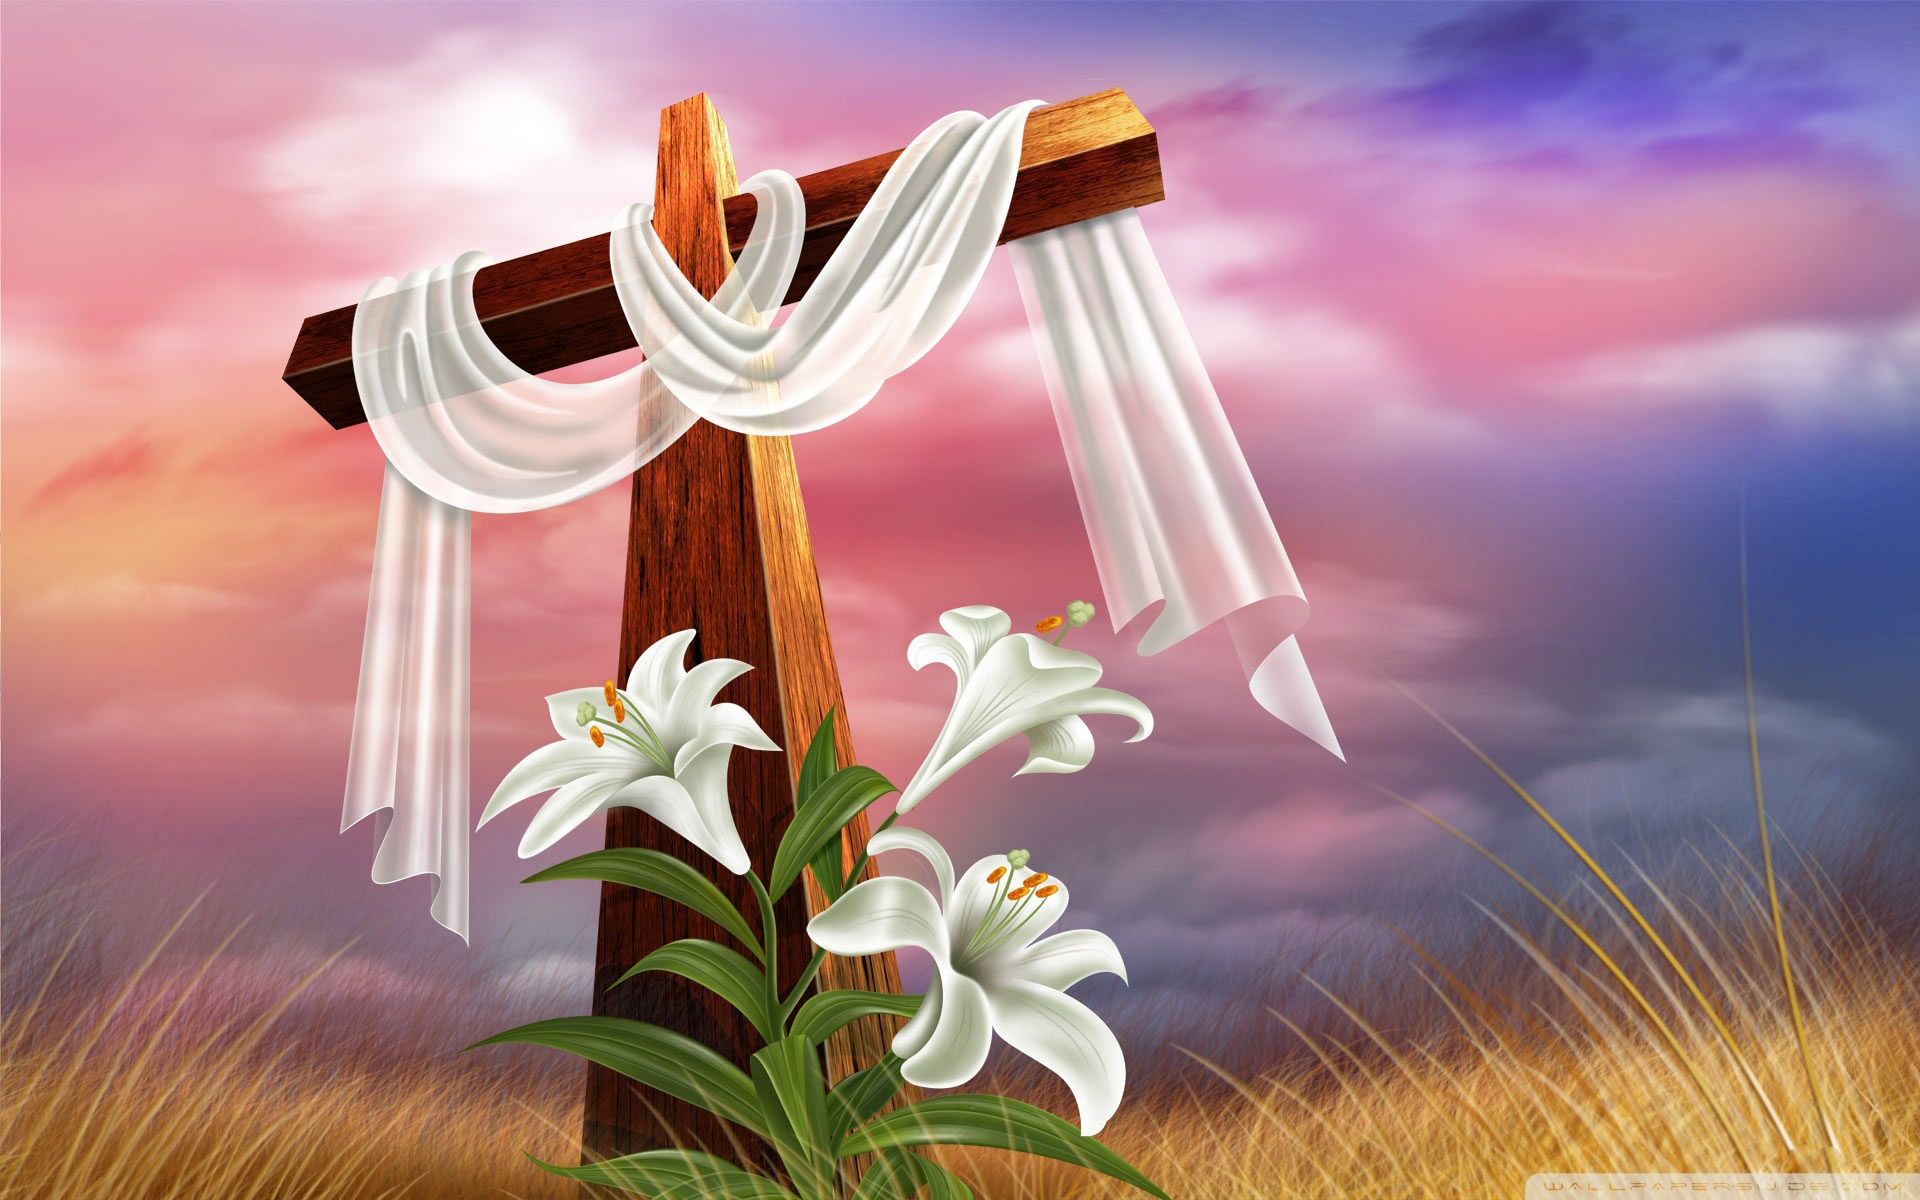 Easter Cross Ultra HD Desktop Background Wallpaper for 4K UHD TV